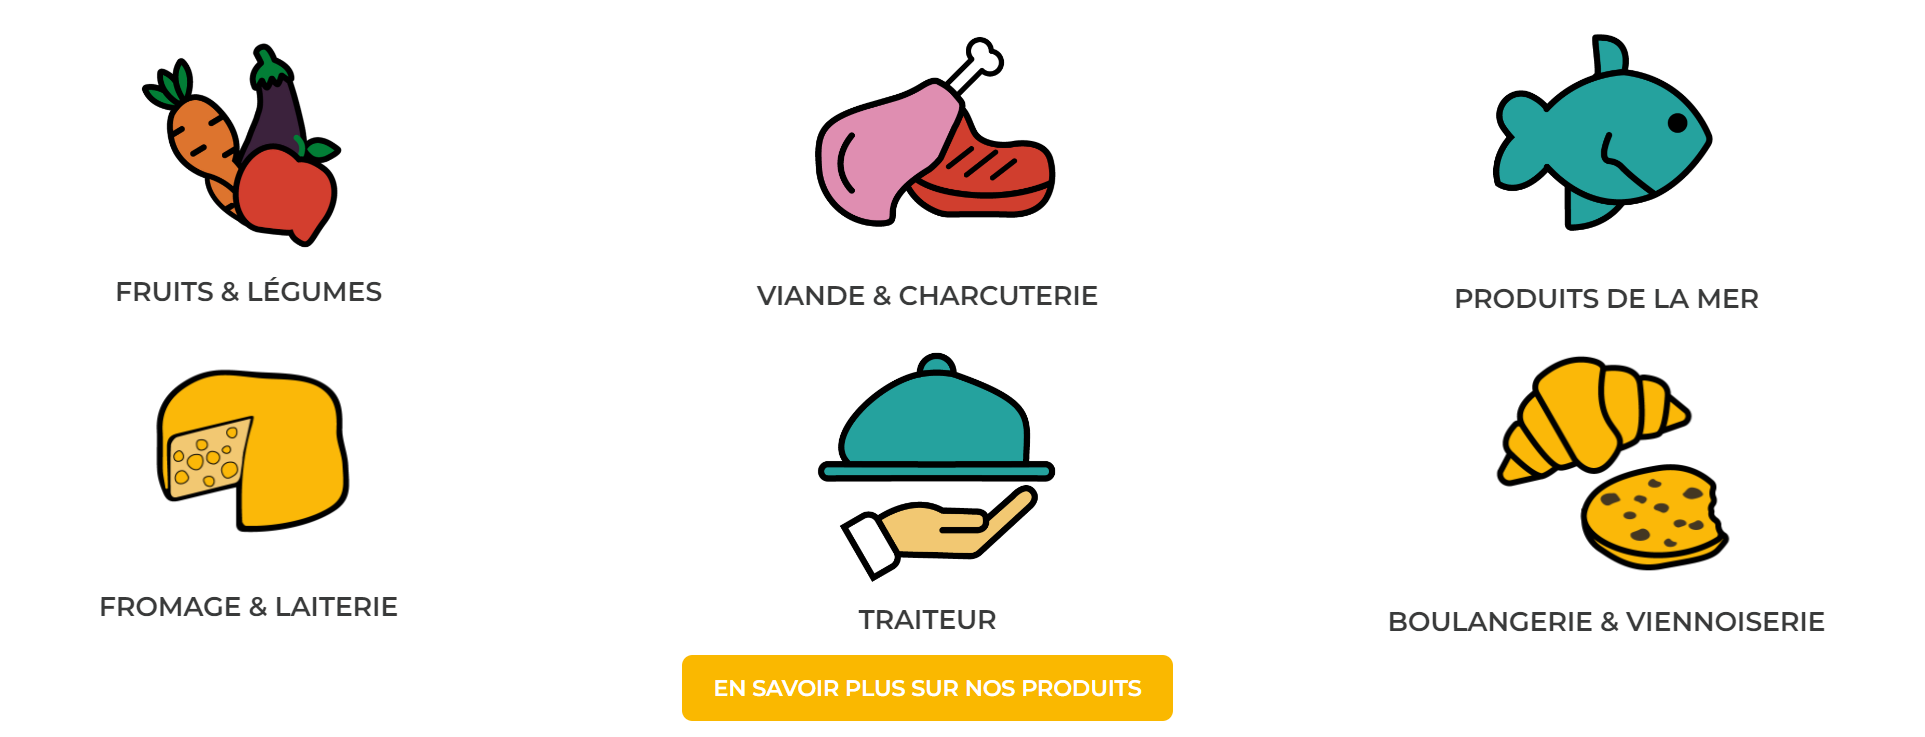 Un système de distribution alimentaire anti-gaspillage en France